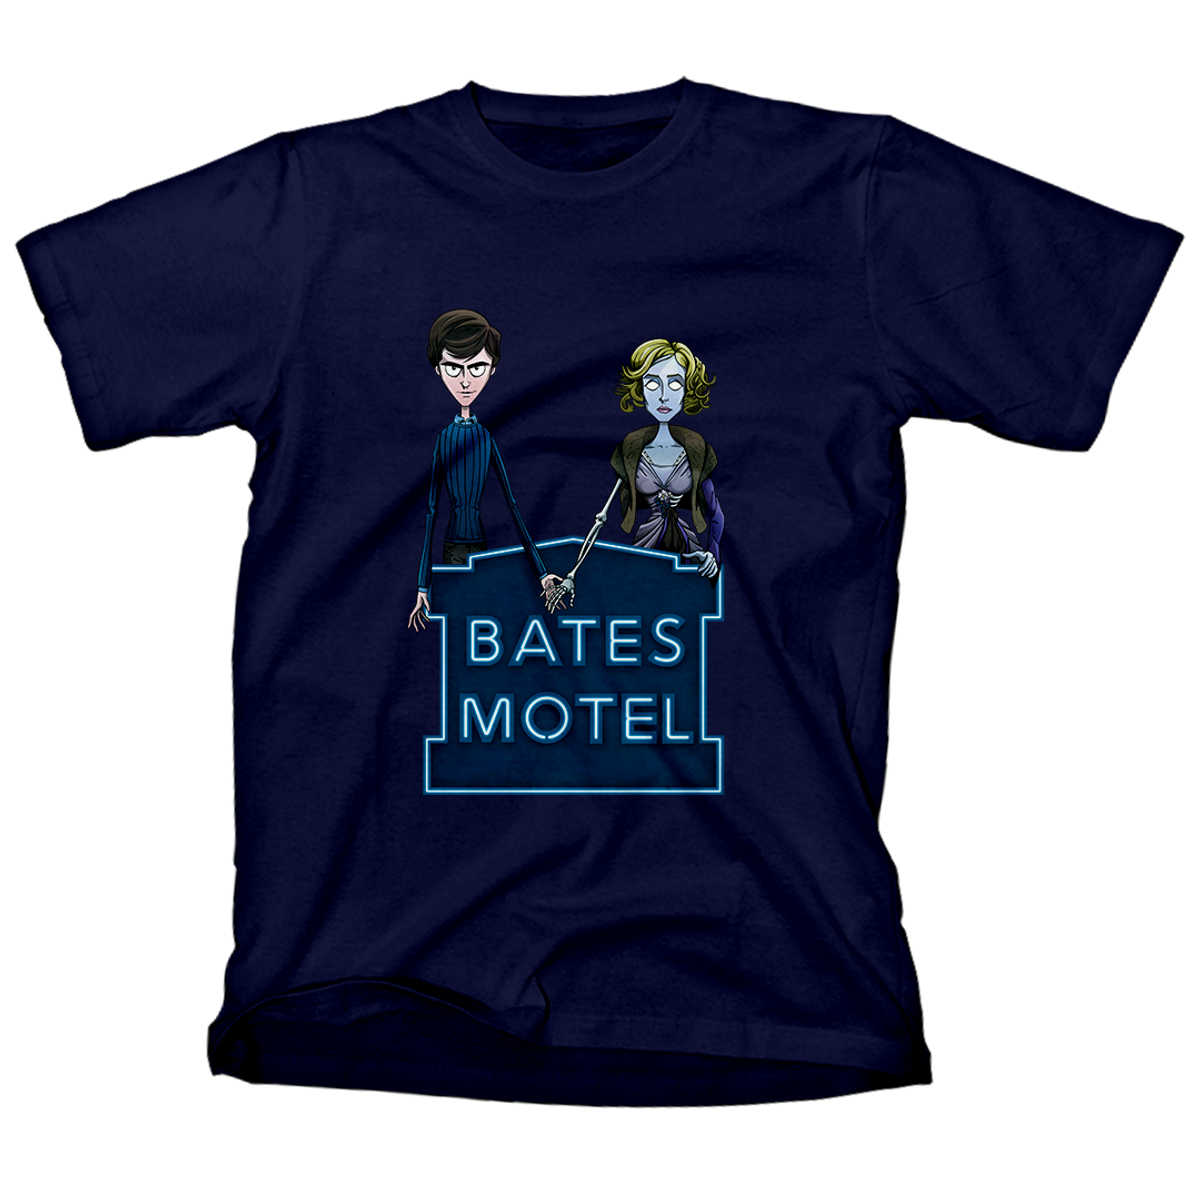 Nome do produto: Bates Motel <br>[T-Shirt Quality]</br>